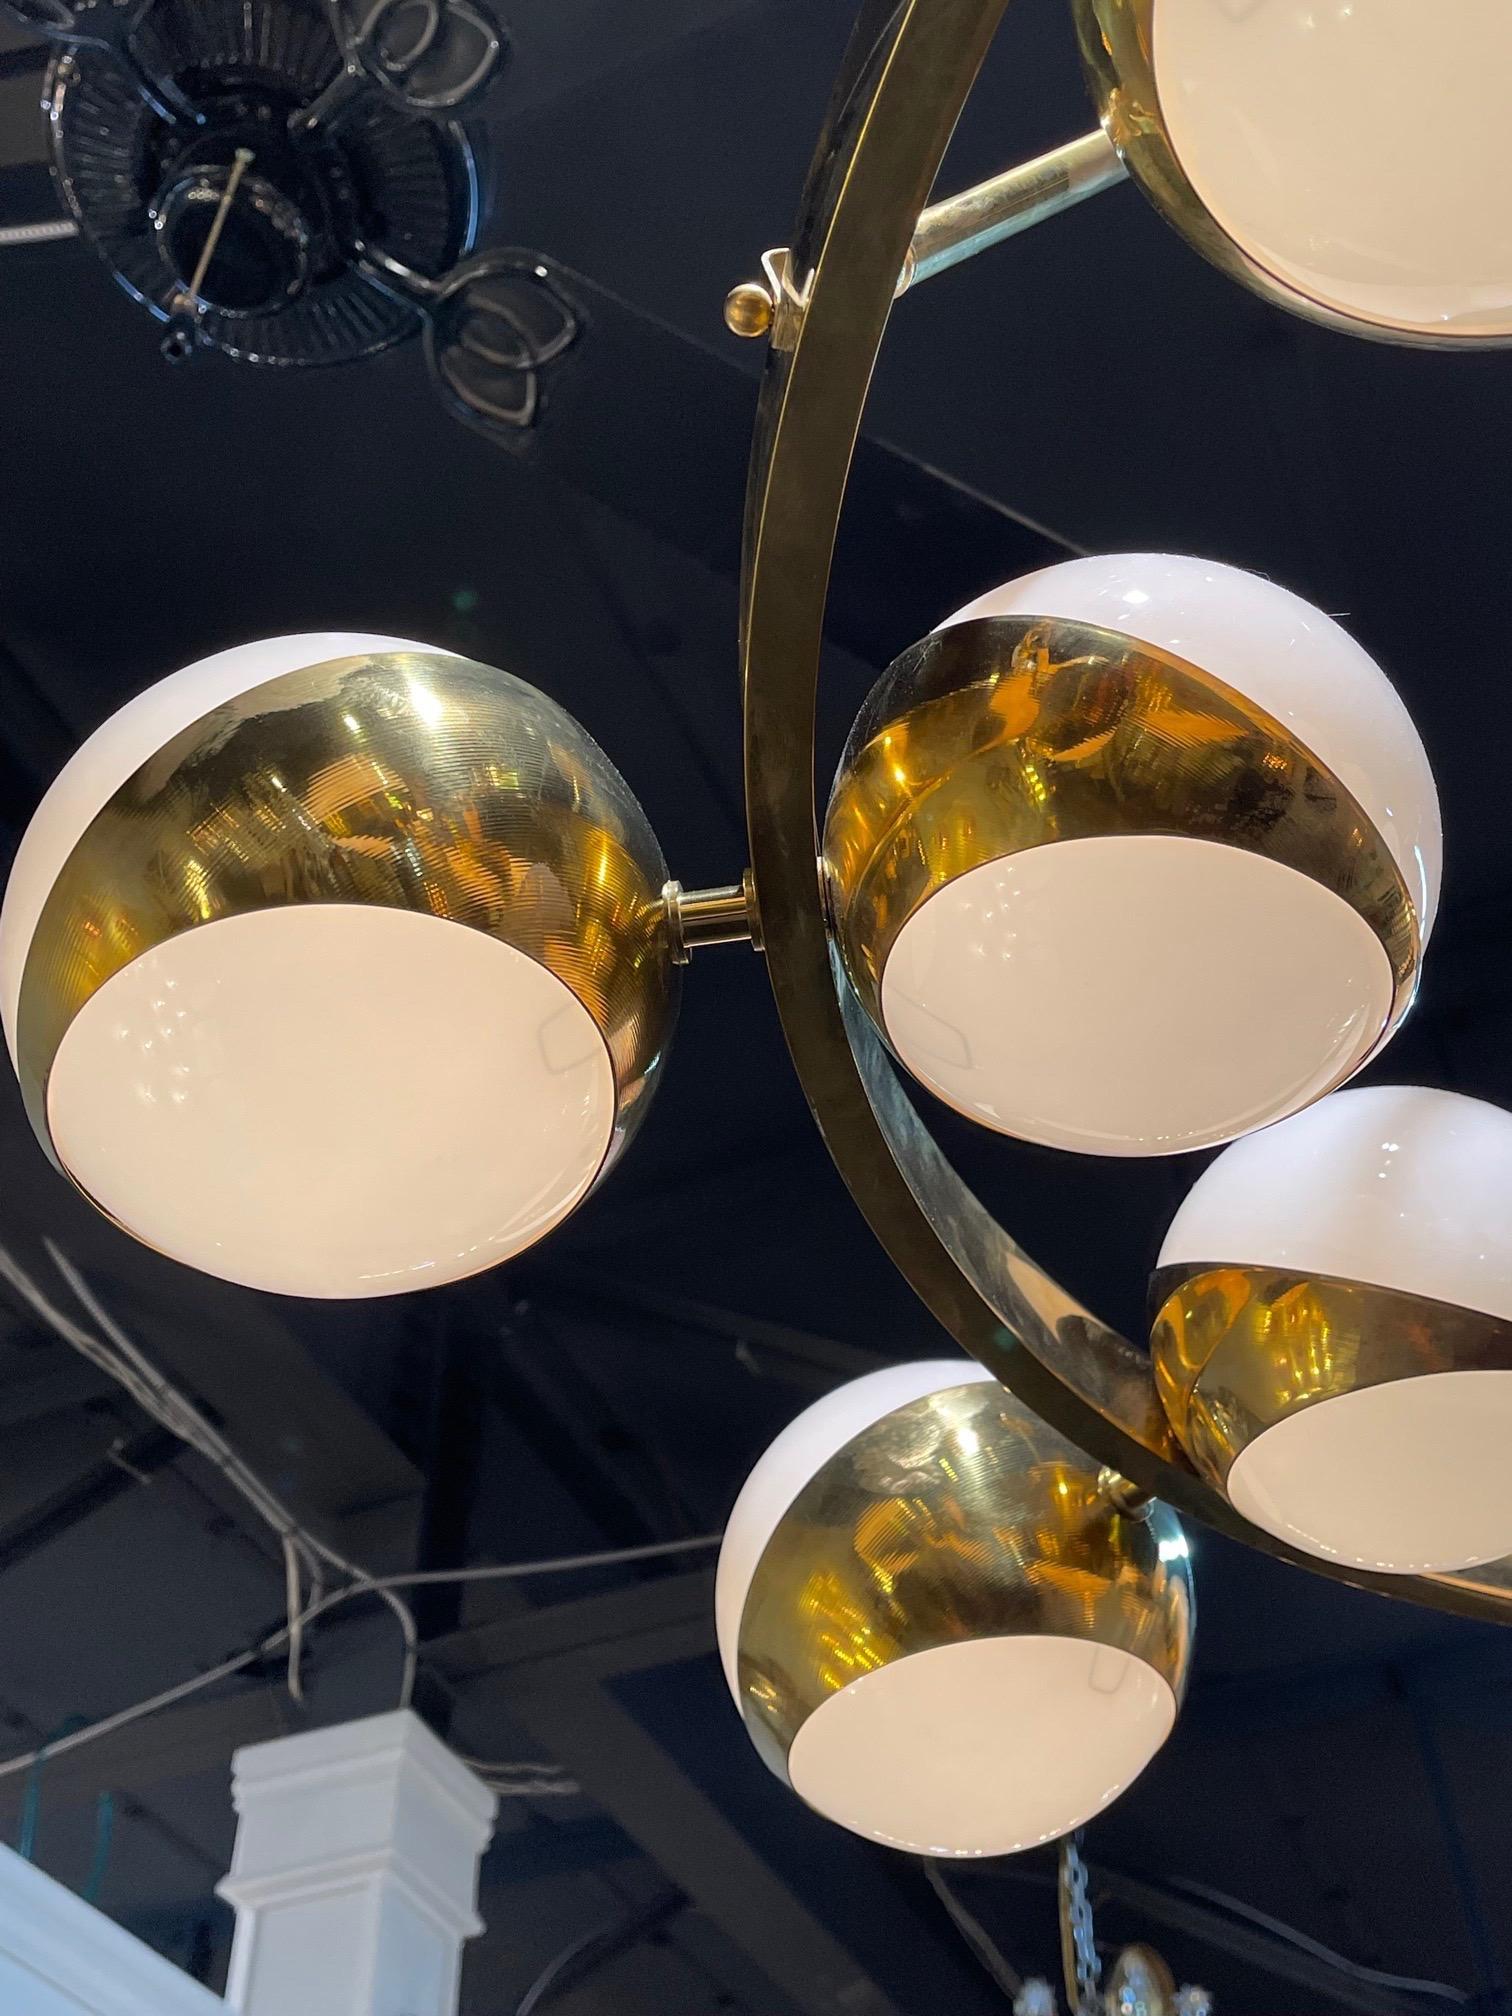 Spektakuläre moderne Murano-Glas und Messing Aufhängung 18 Licht Kronleuchter. Erzeugt ein schönes, gehobenes dekoratives Aussehen. Ein wahres Kunstwerk!